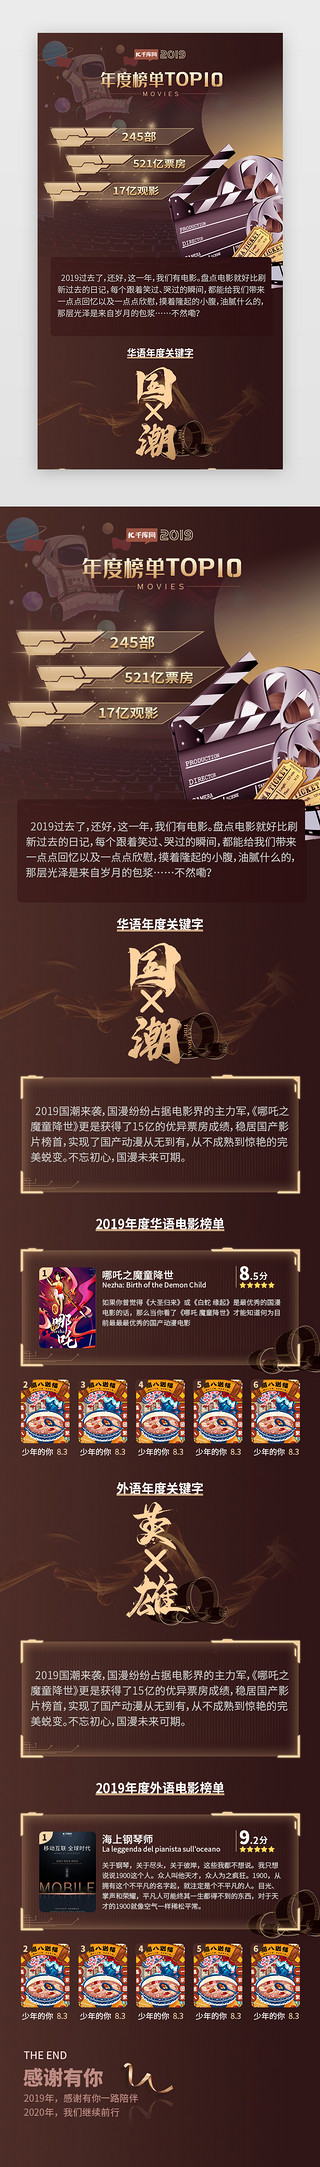 2019开工大吉UI设计素材_2019年度影片榜单盘点总结榜单H5